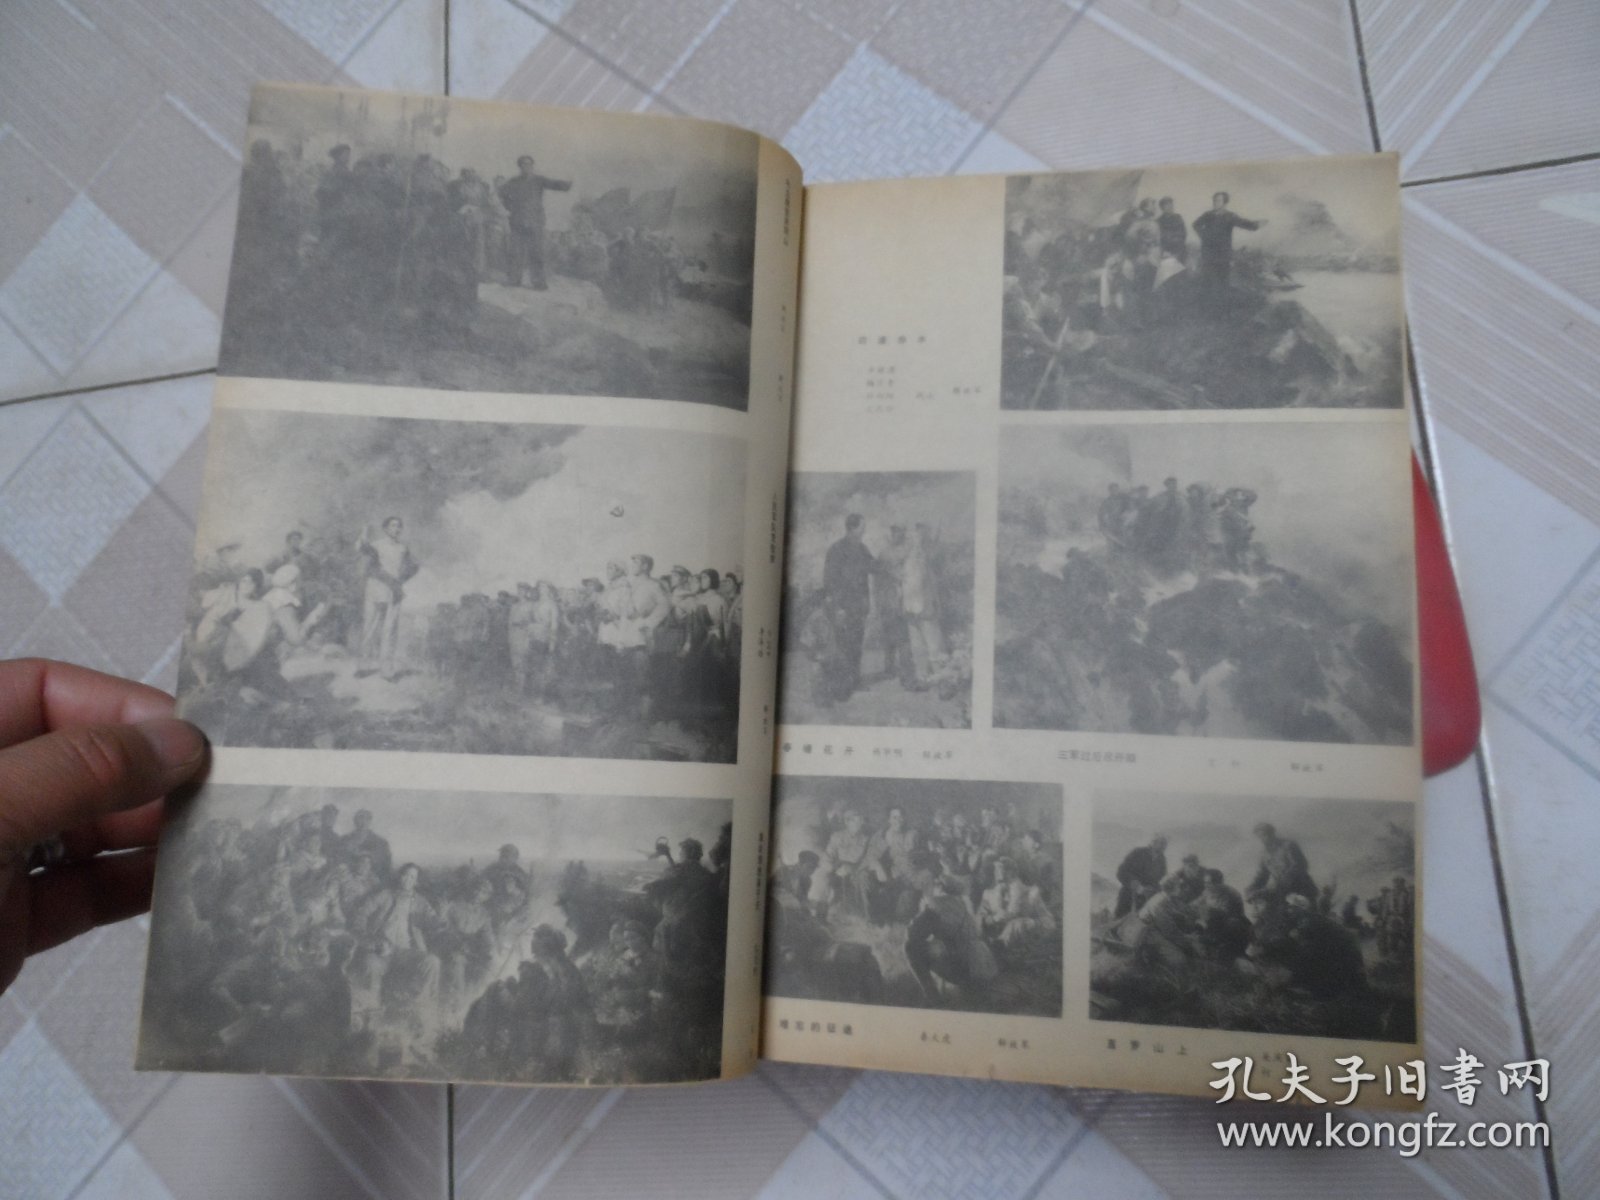 美术作品展览图录-庆祝中国人民解放军建军五十周年